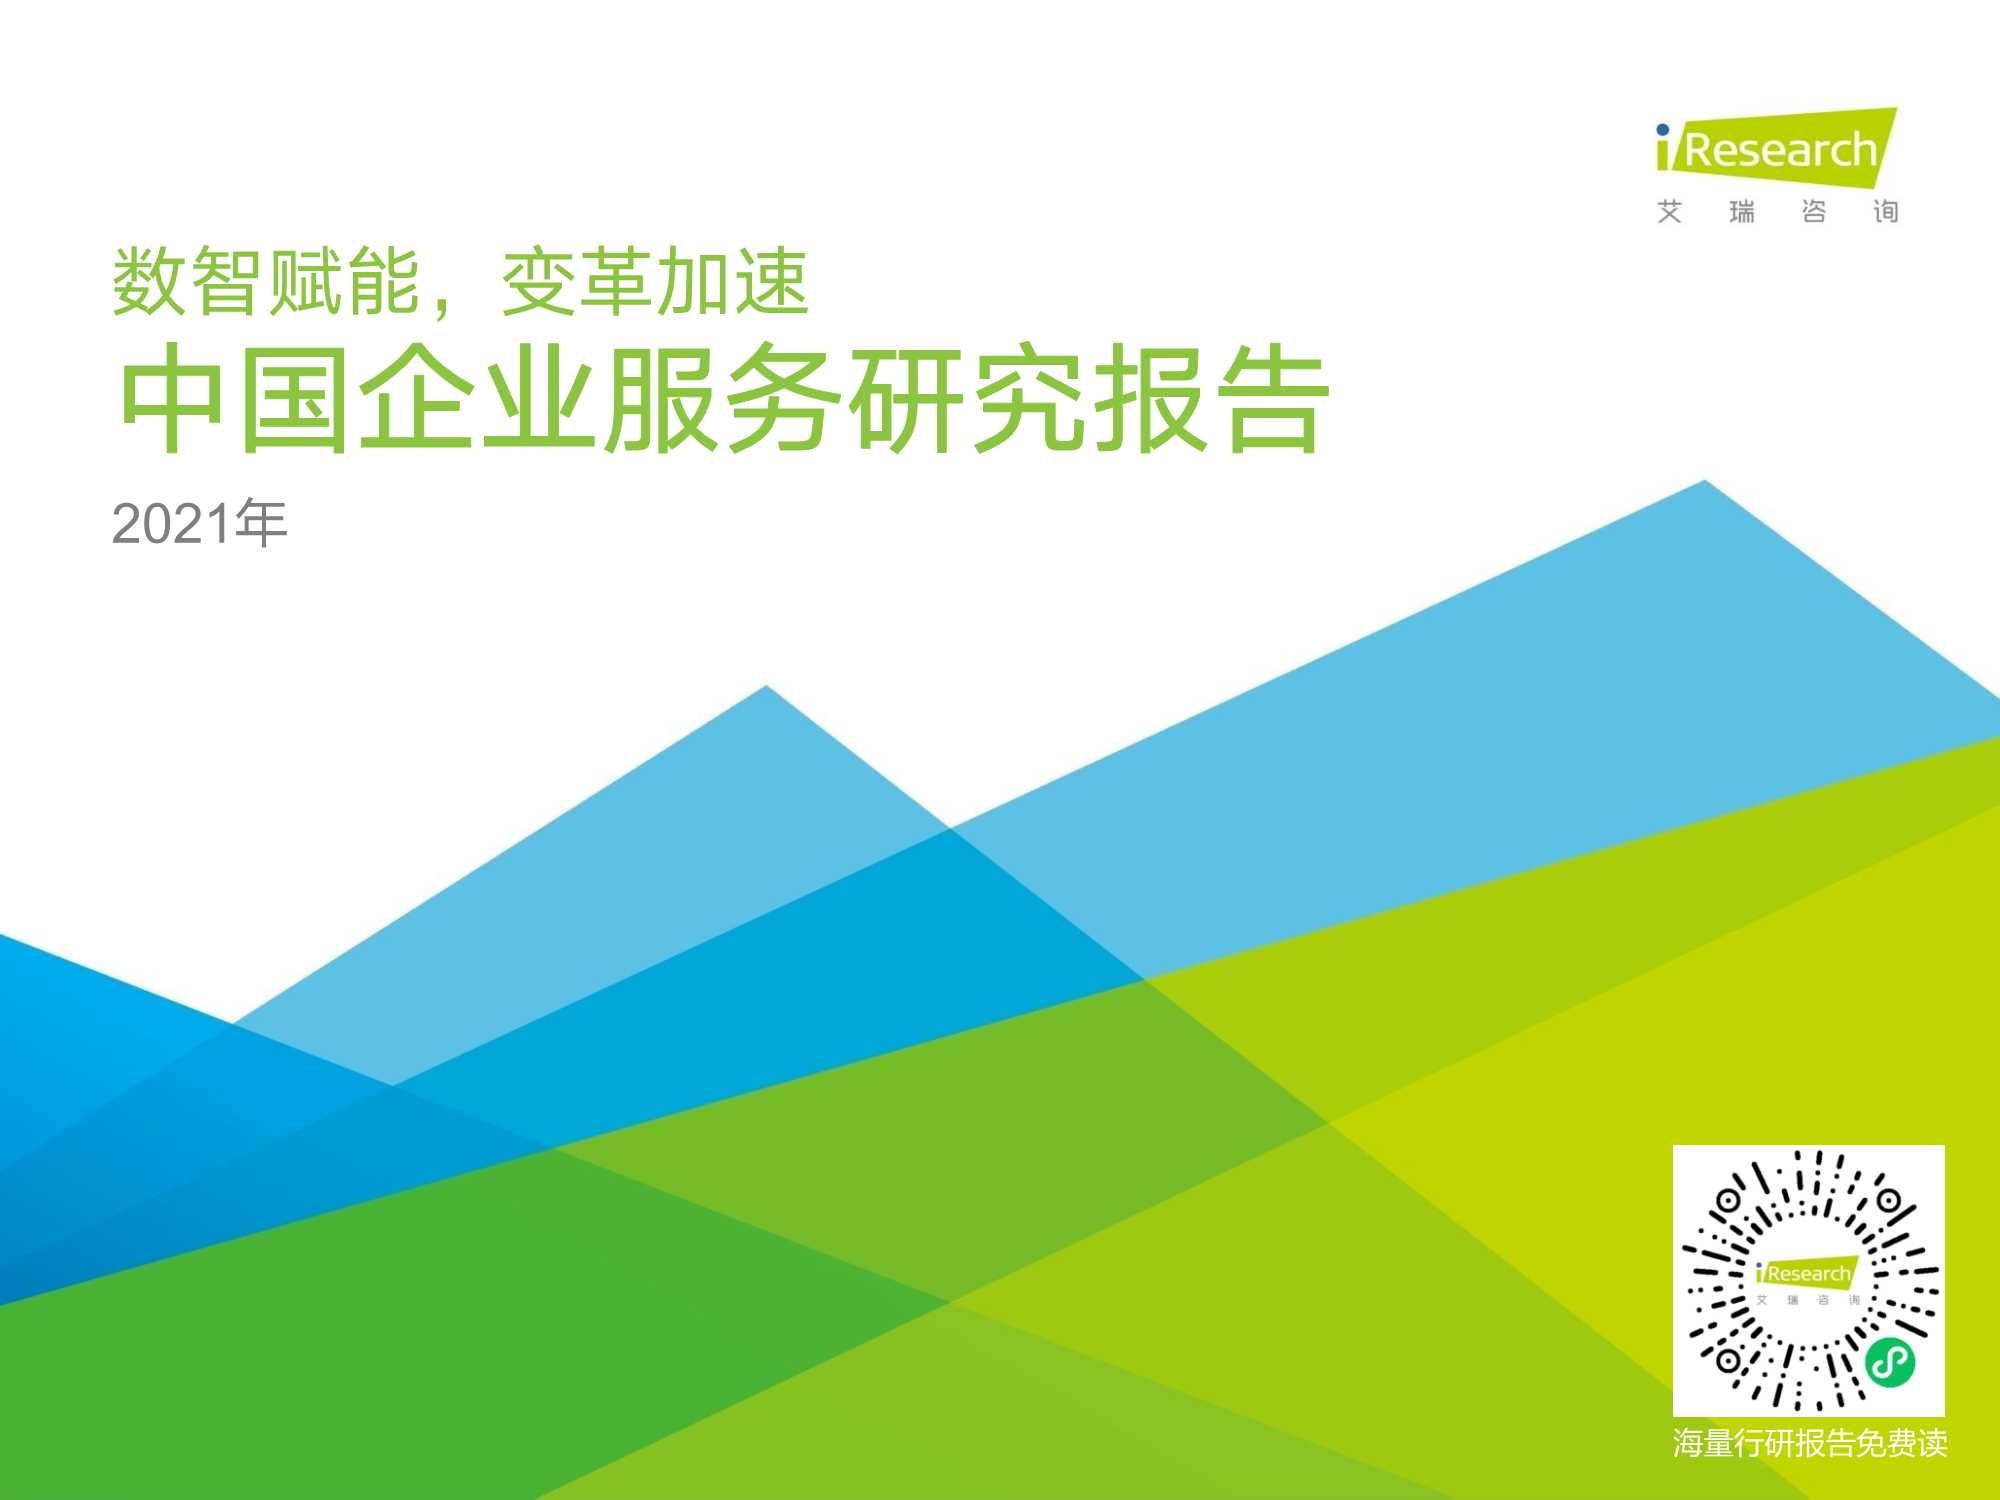 艾瑞咨询-2021年中国企业服务研究报告-2021.08-96页